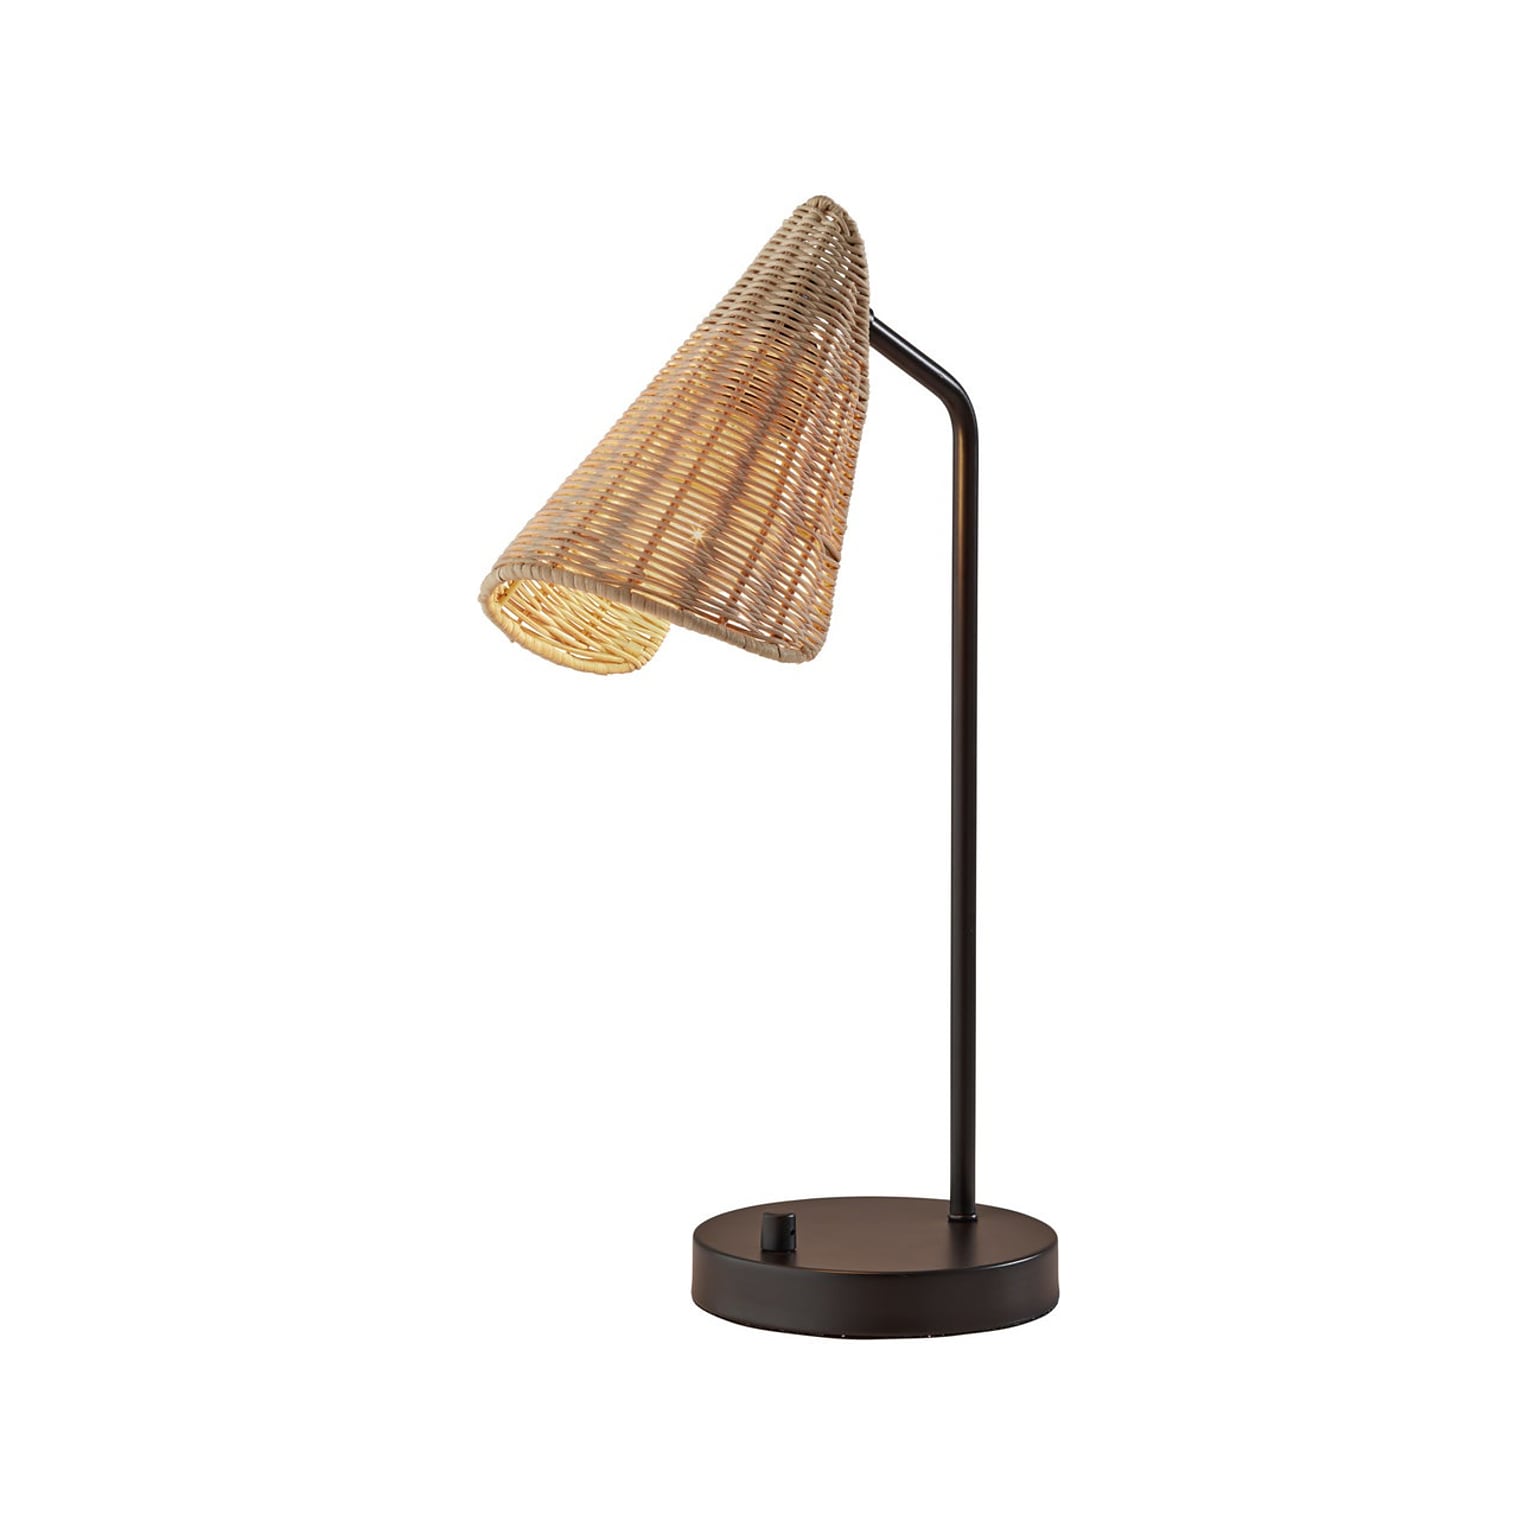 Adesso Cove Incandescent Desk Lamp, 20.25, Natural Rattan/Matte Black (5112-01)